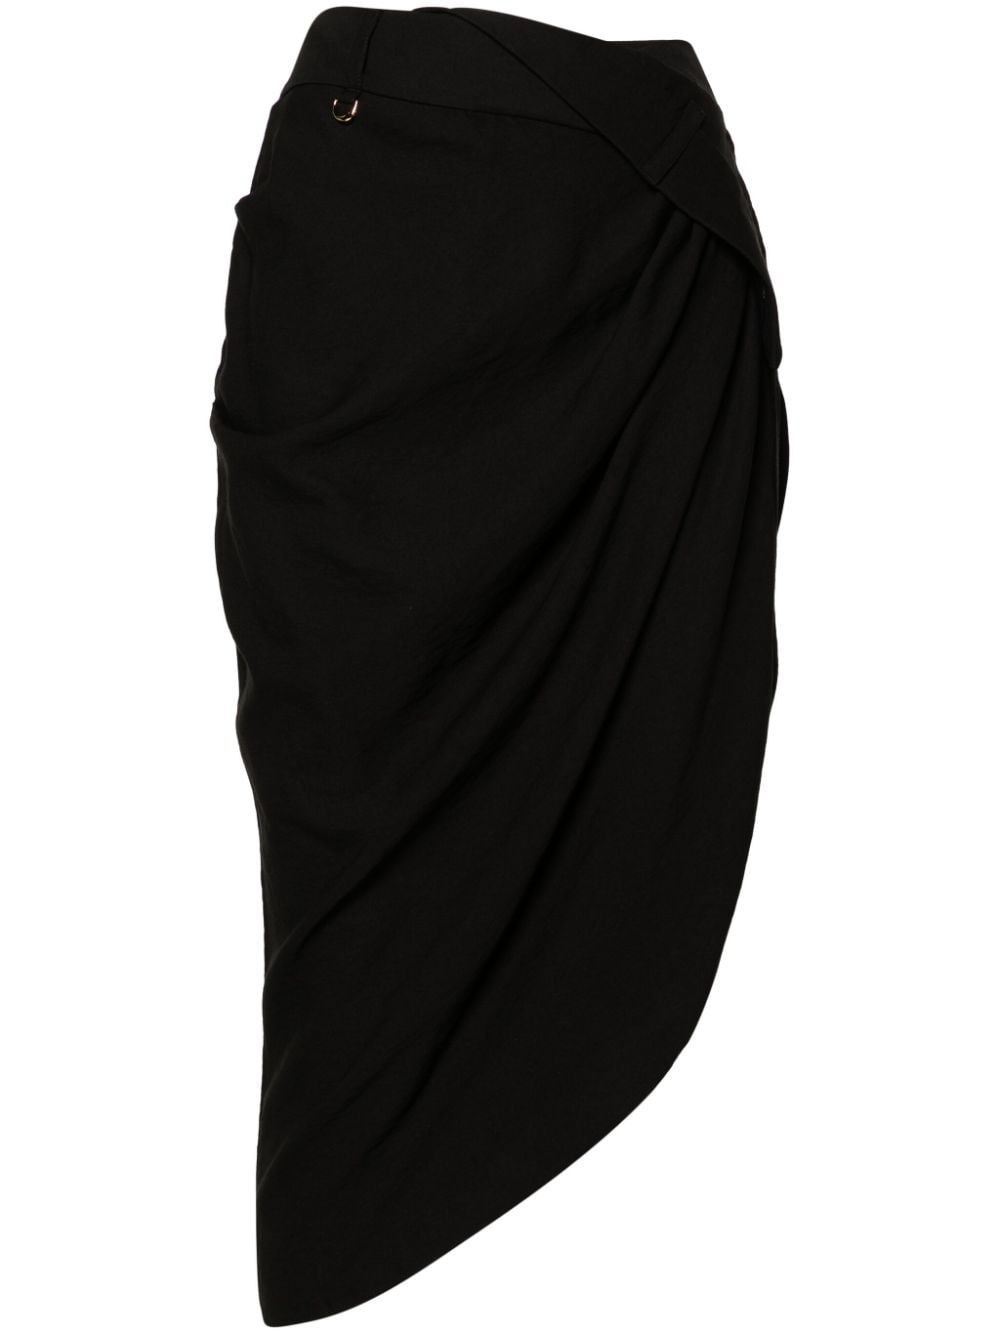 La Jupe asymmetric skirt - 1